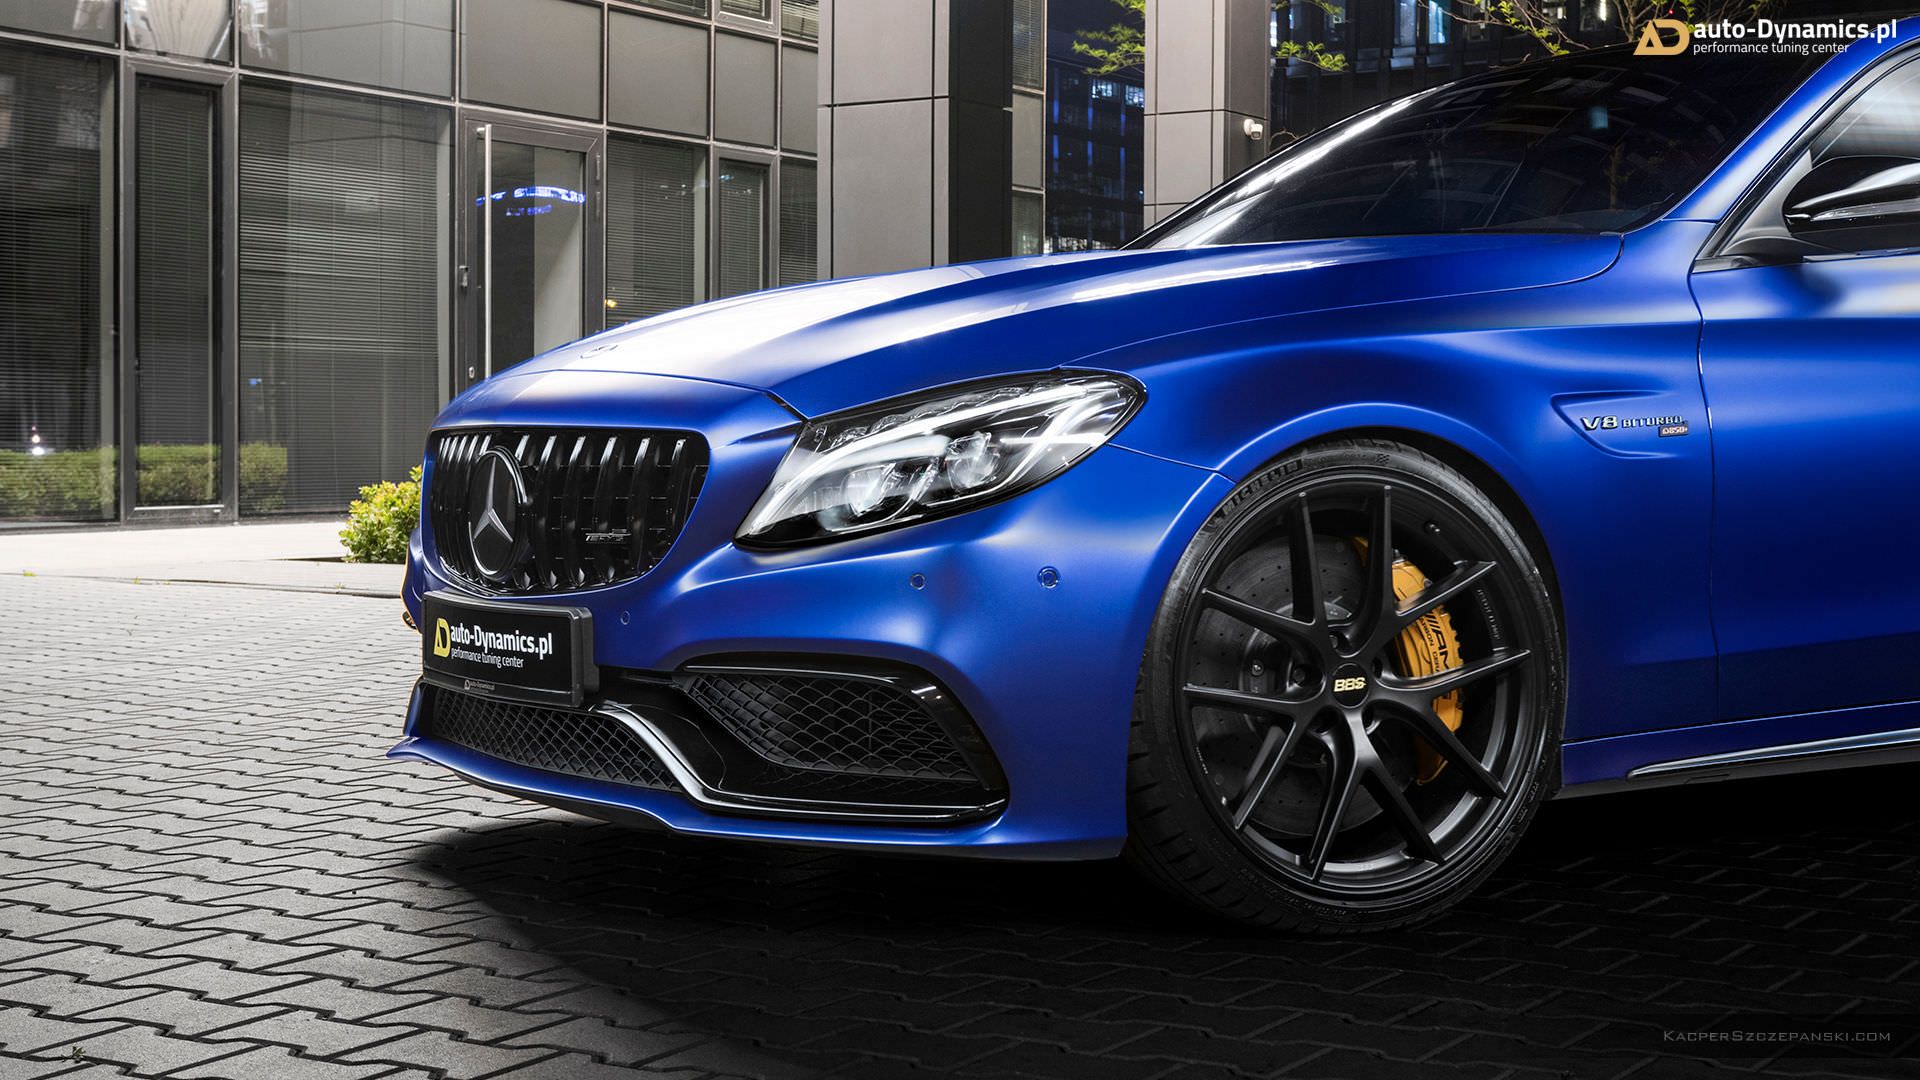 چراغ جلو خودرو مرسدس بنز / Mercedes-AMG C63 S آبی رنگ با تیونینگ اتوداینامیکس